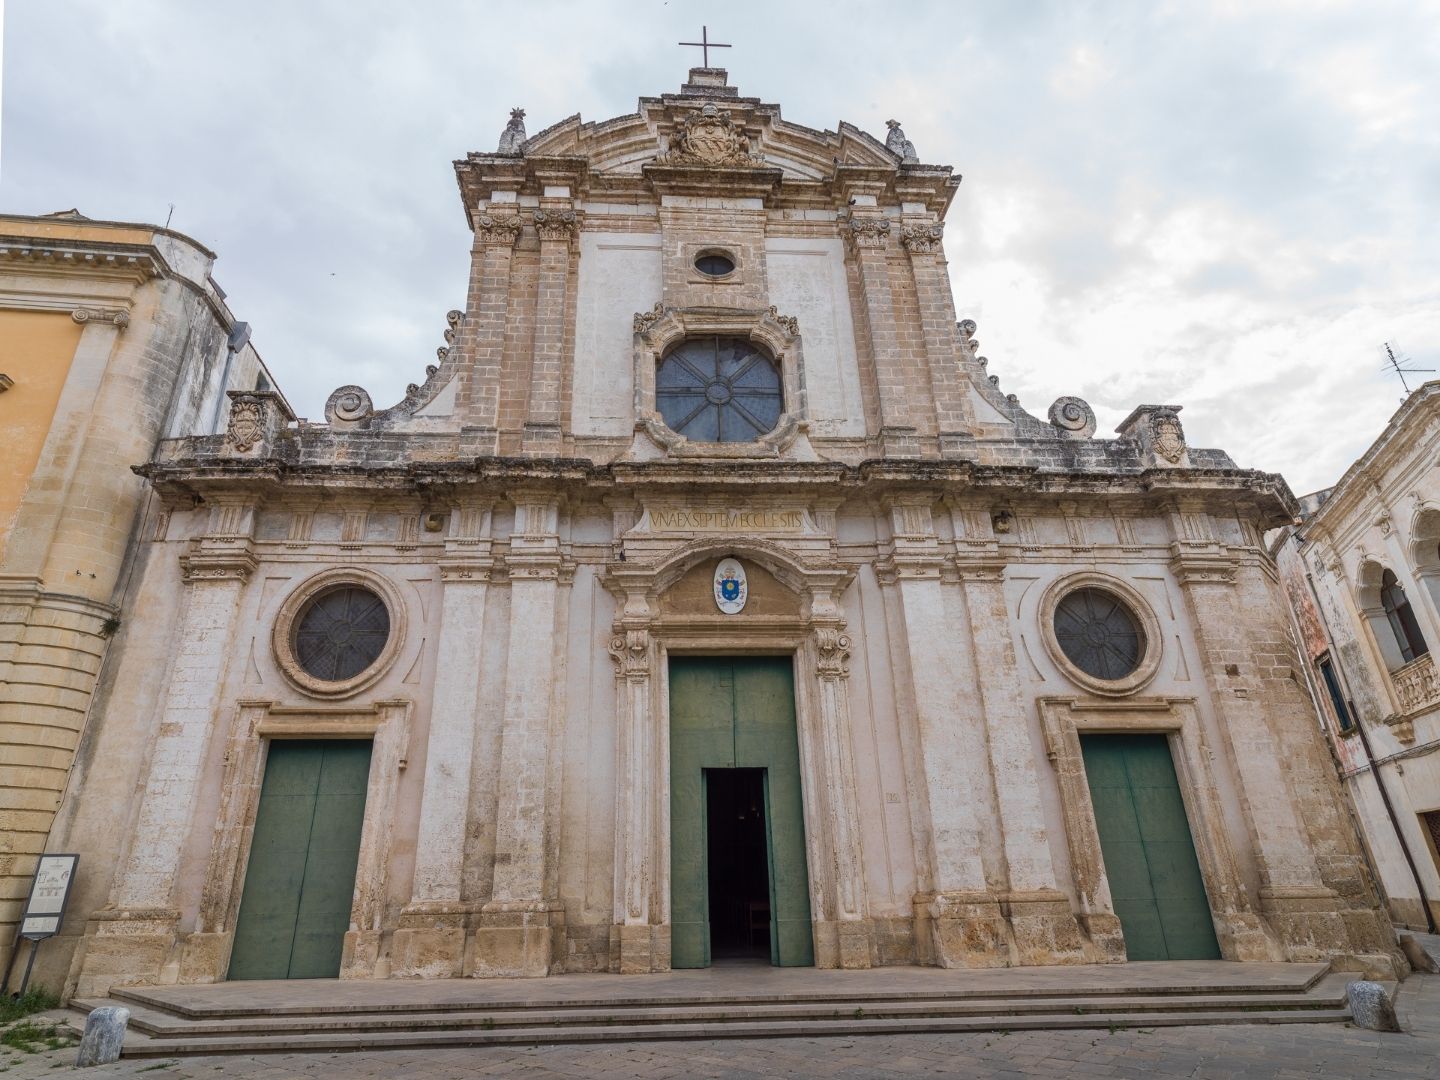 Basilica cattedrale di santa maria assunta Visit Nardò